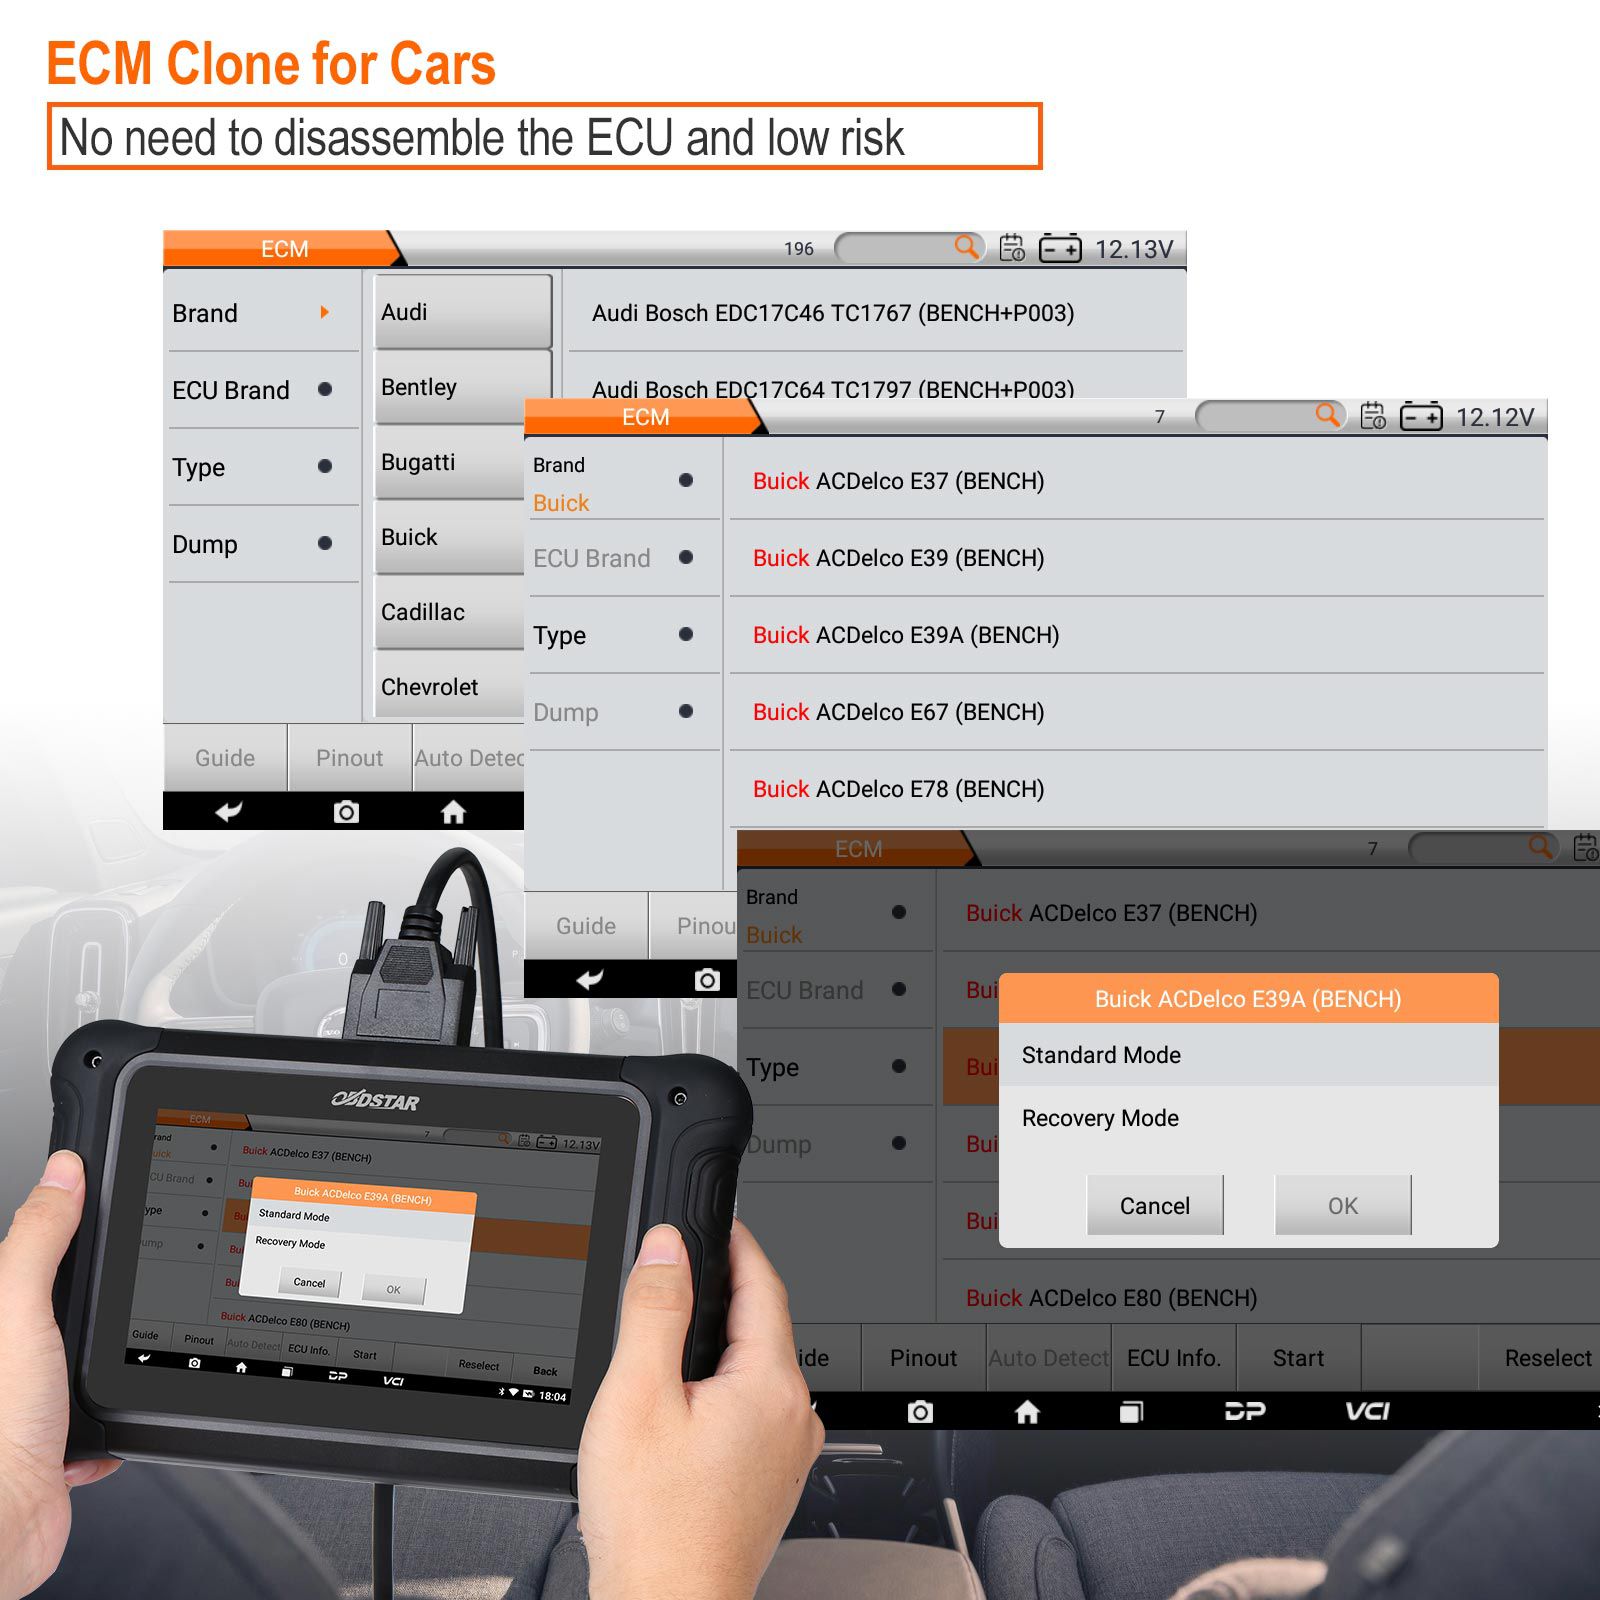 Obdstar dc706 la herramienta ECM / TCM / BODY ECU para automóviles y motocicletas clona el ECU a través del modo OBD o mesa de trabajo